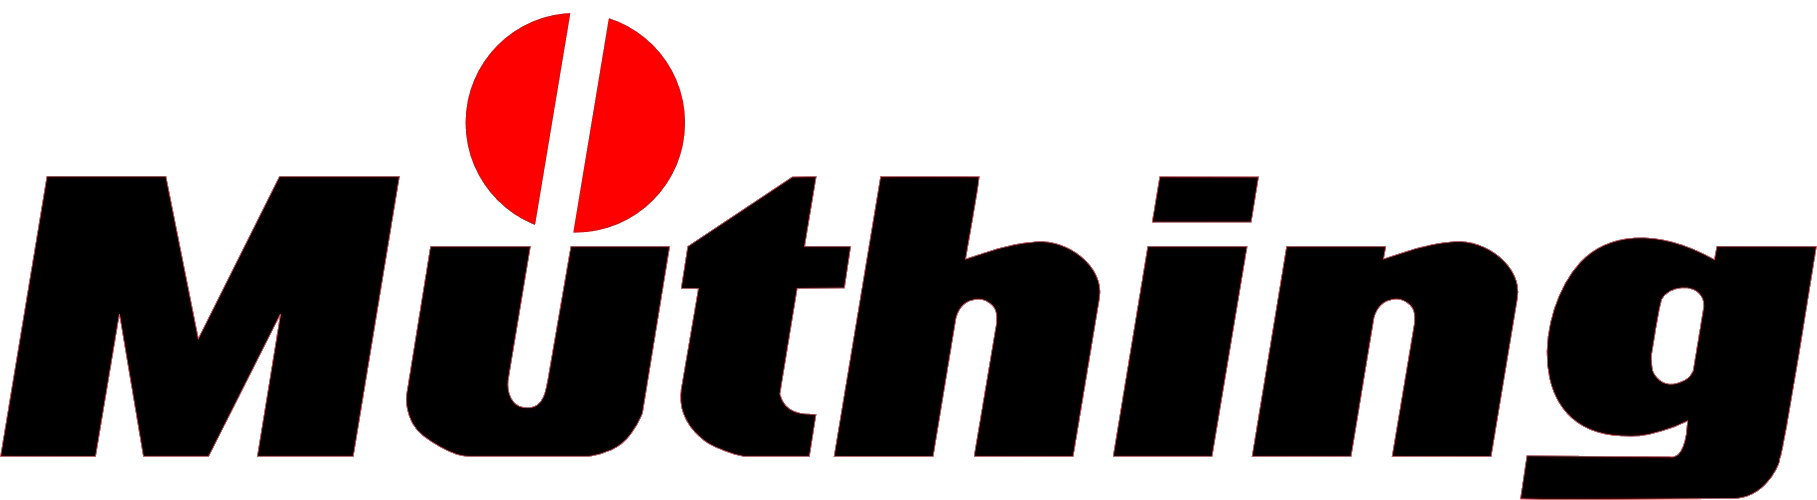 Muething Logo